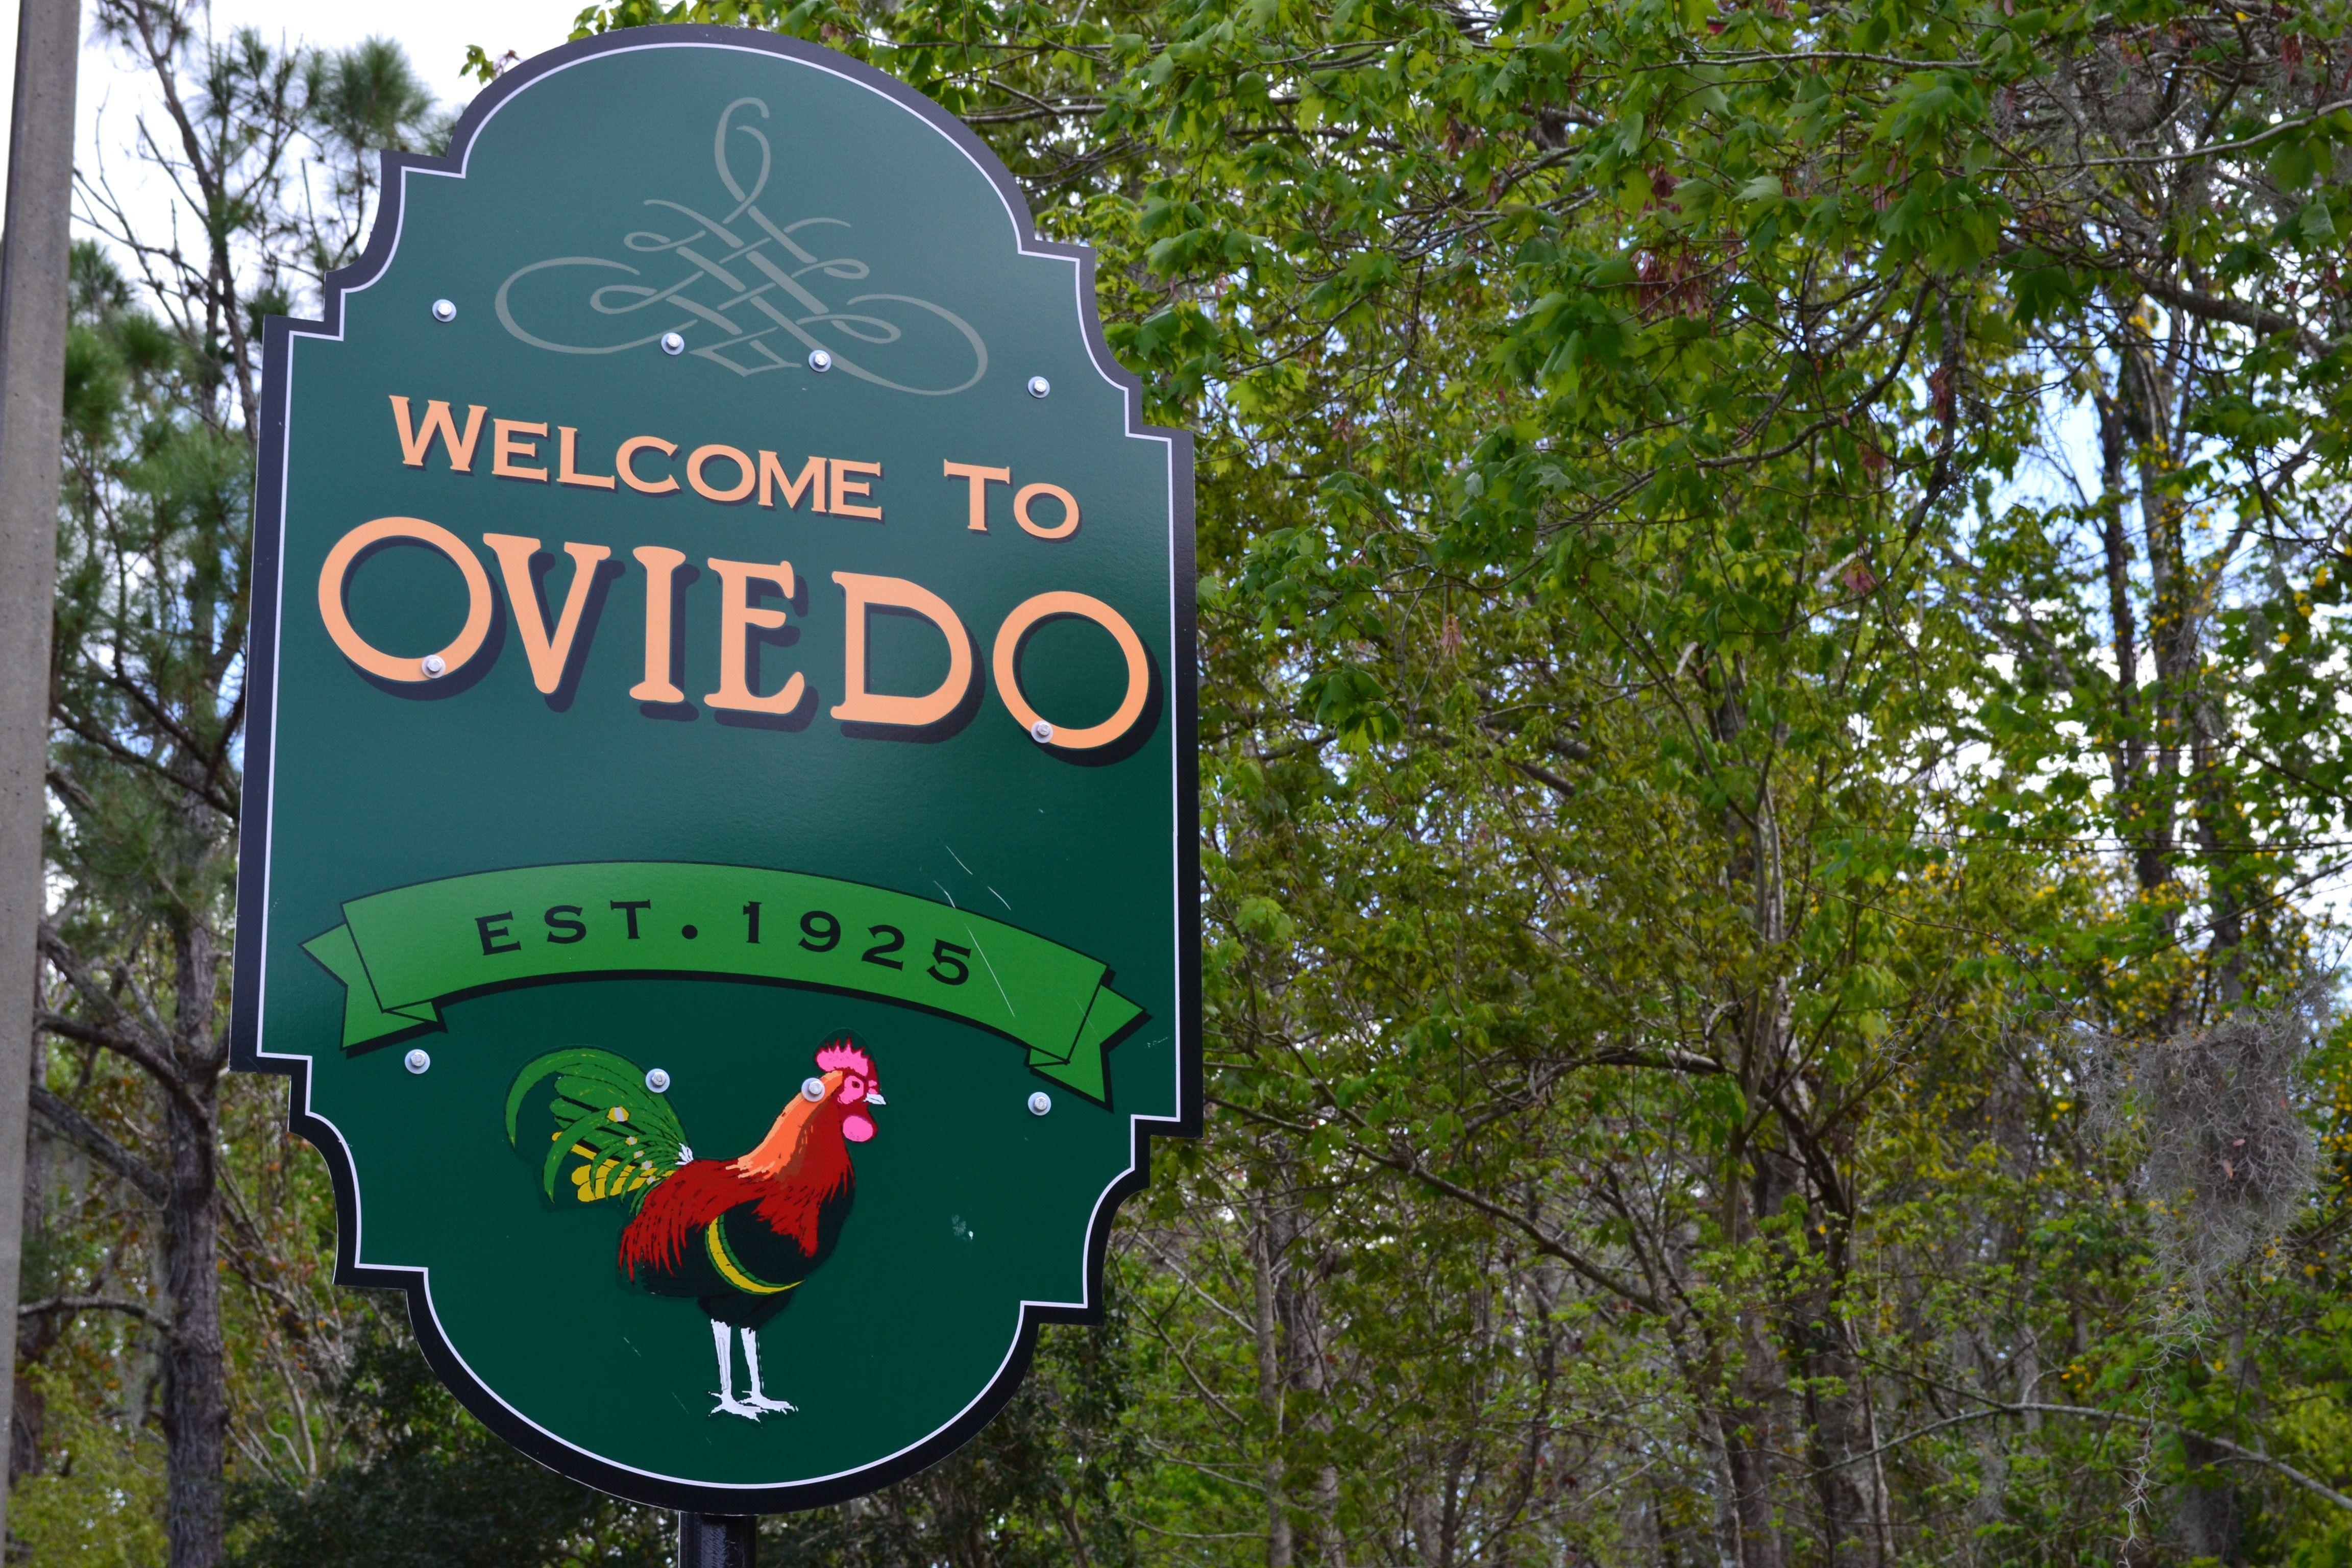 Welcome to Oviedo | Oviedo, Oviedo florida, Florida